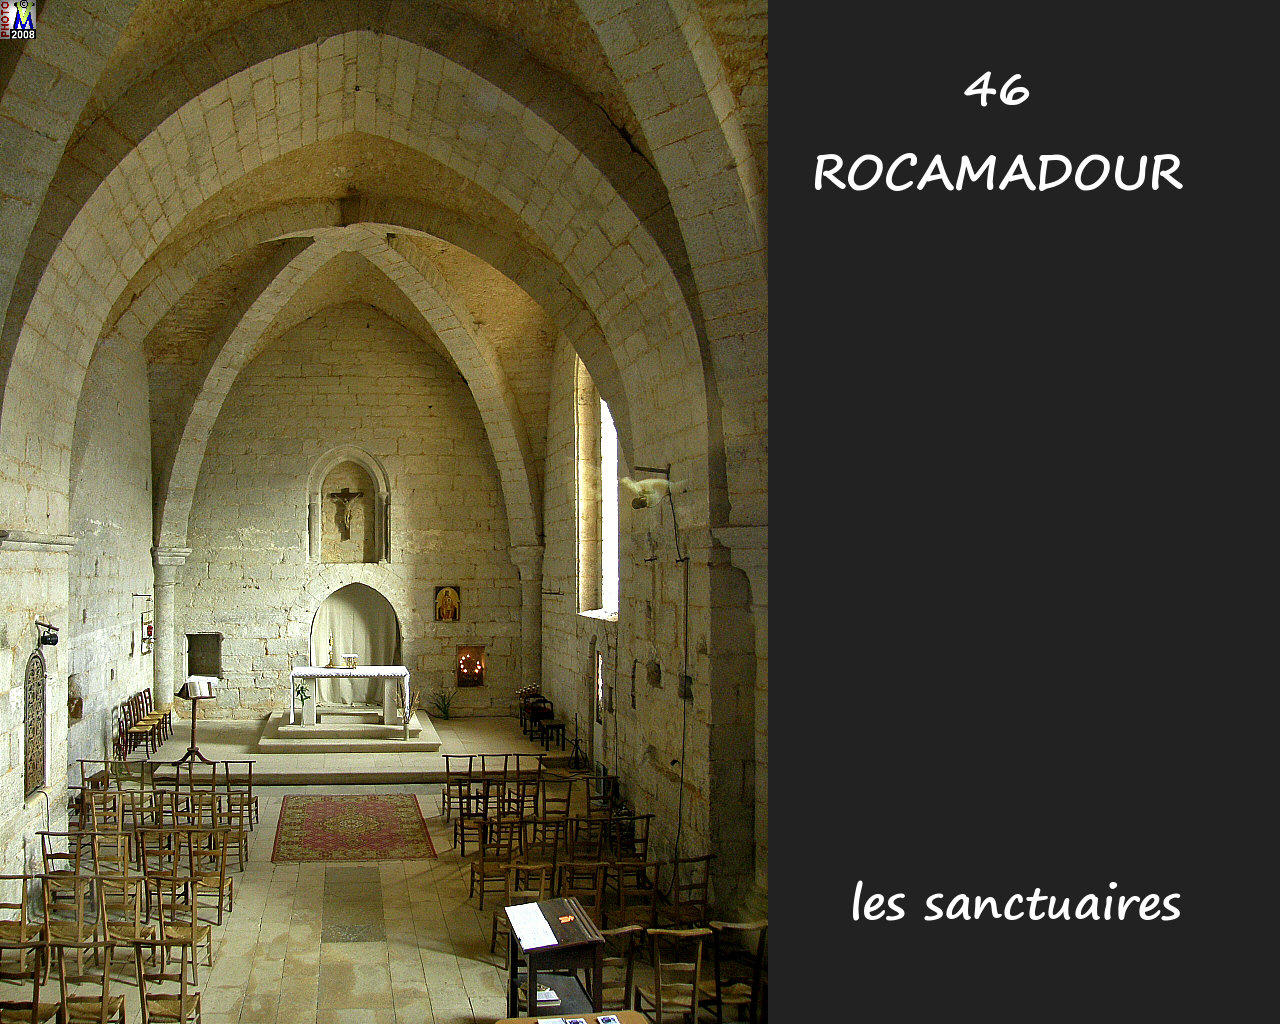 46ROCAMADOUR_sanctuaires_520.jpg